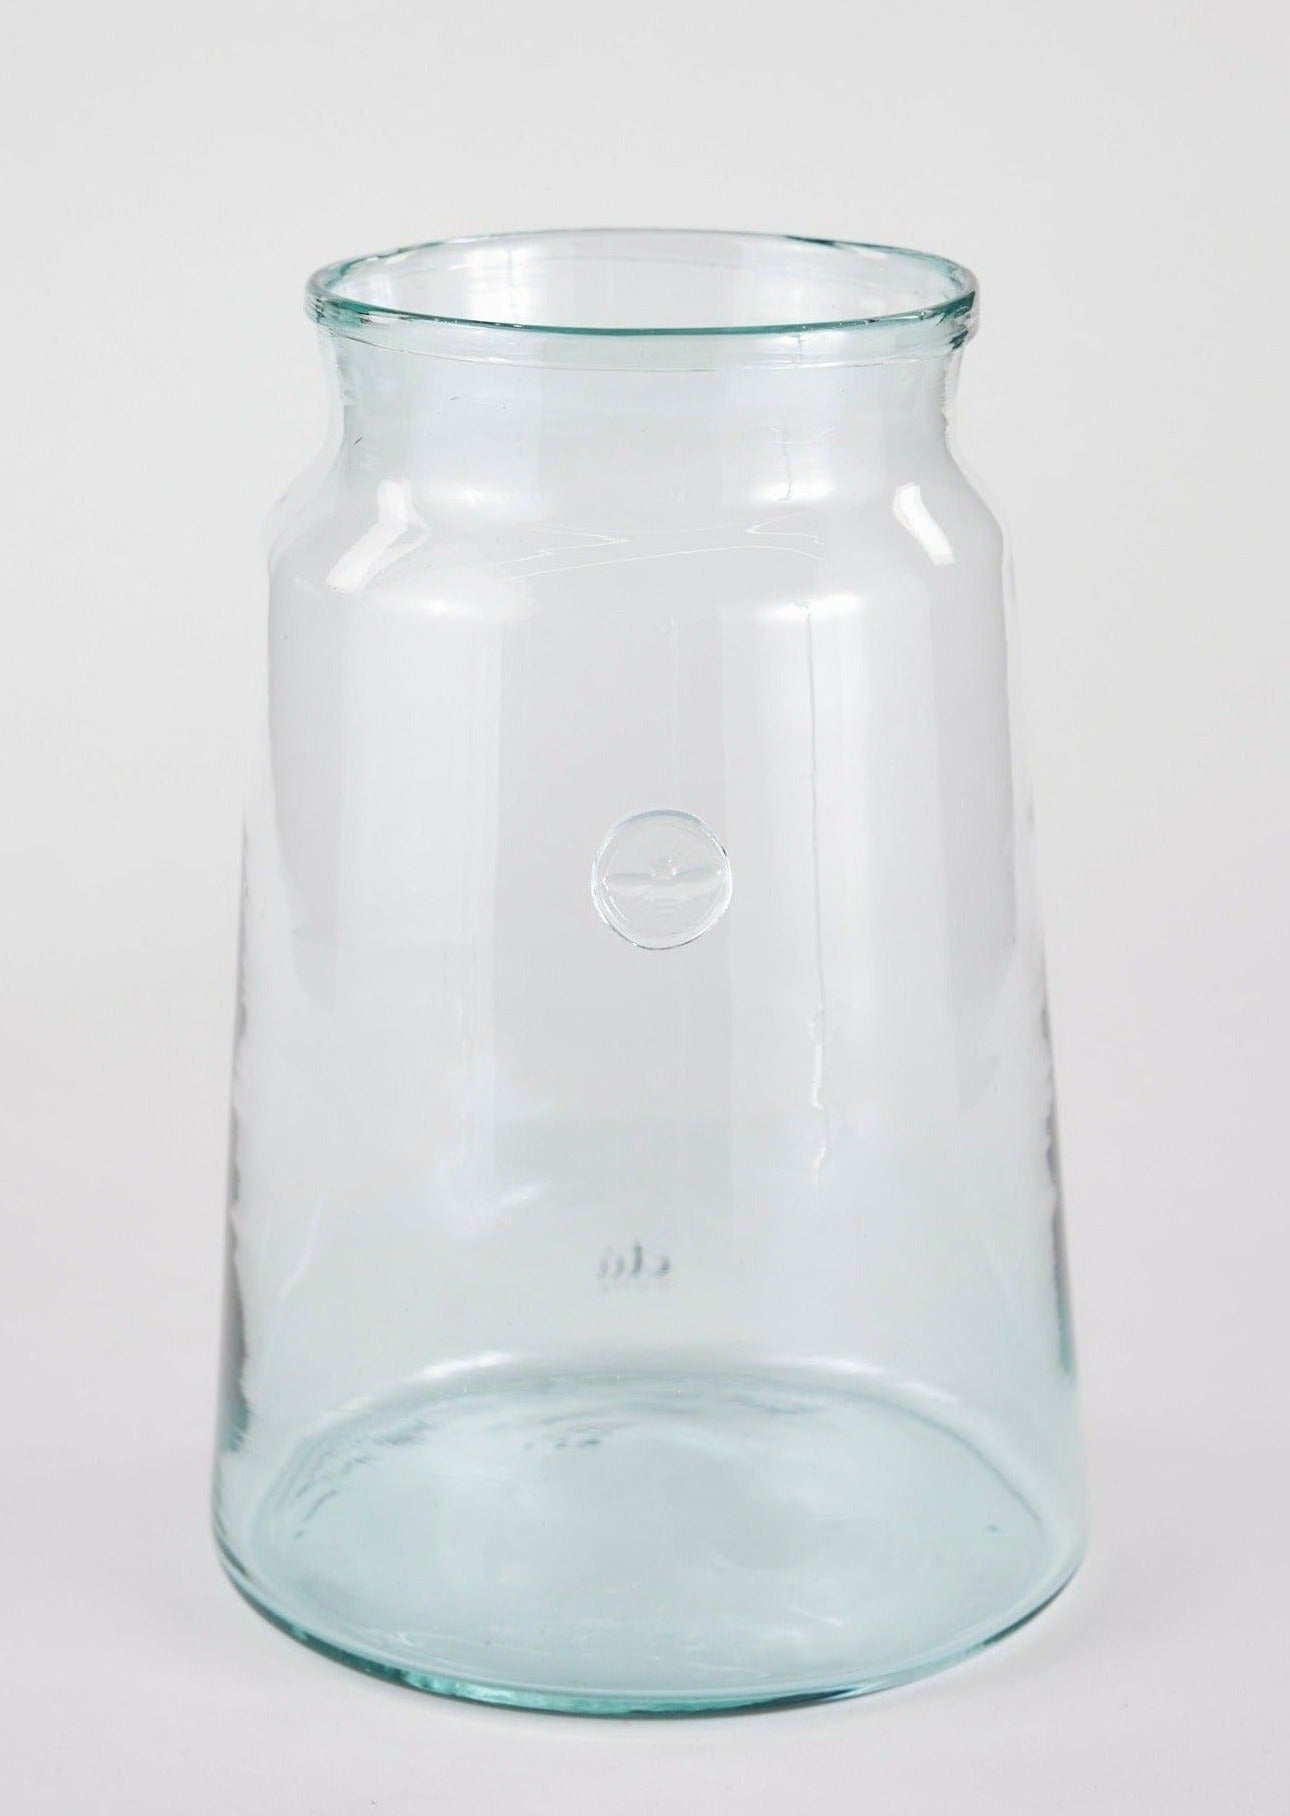 http://www.afloral.com/cdn/shop/files/ETU-GEY453LC9-Large-Glass-French-Jar-Vase.jpg?v=1689341473